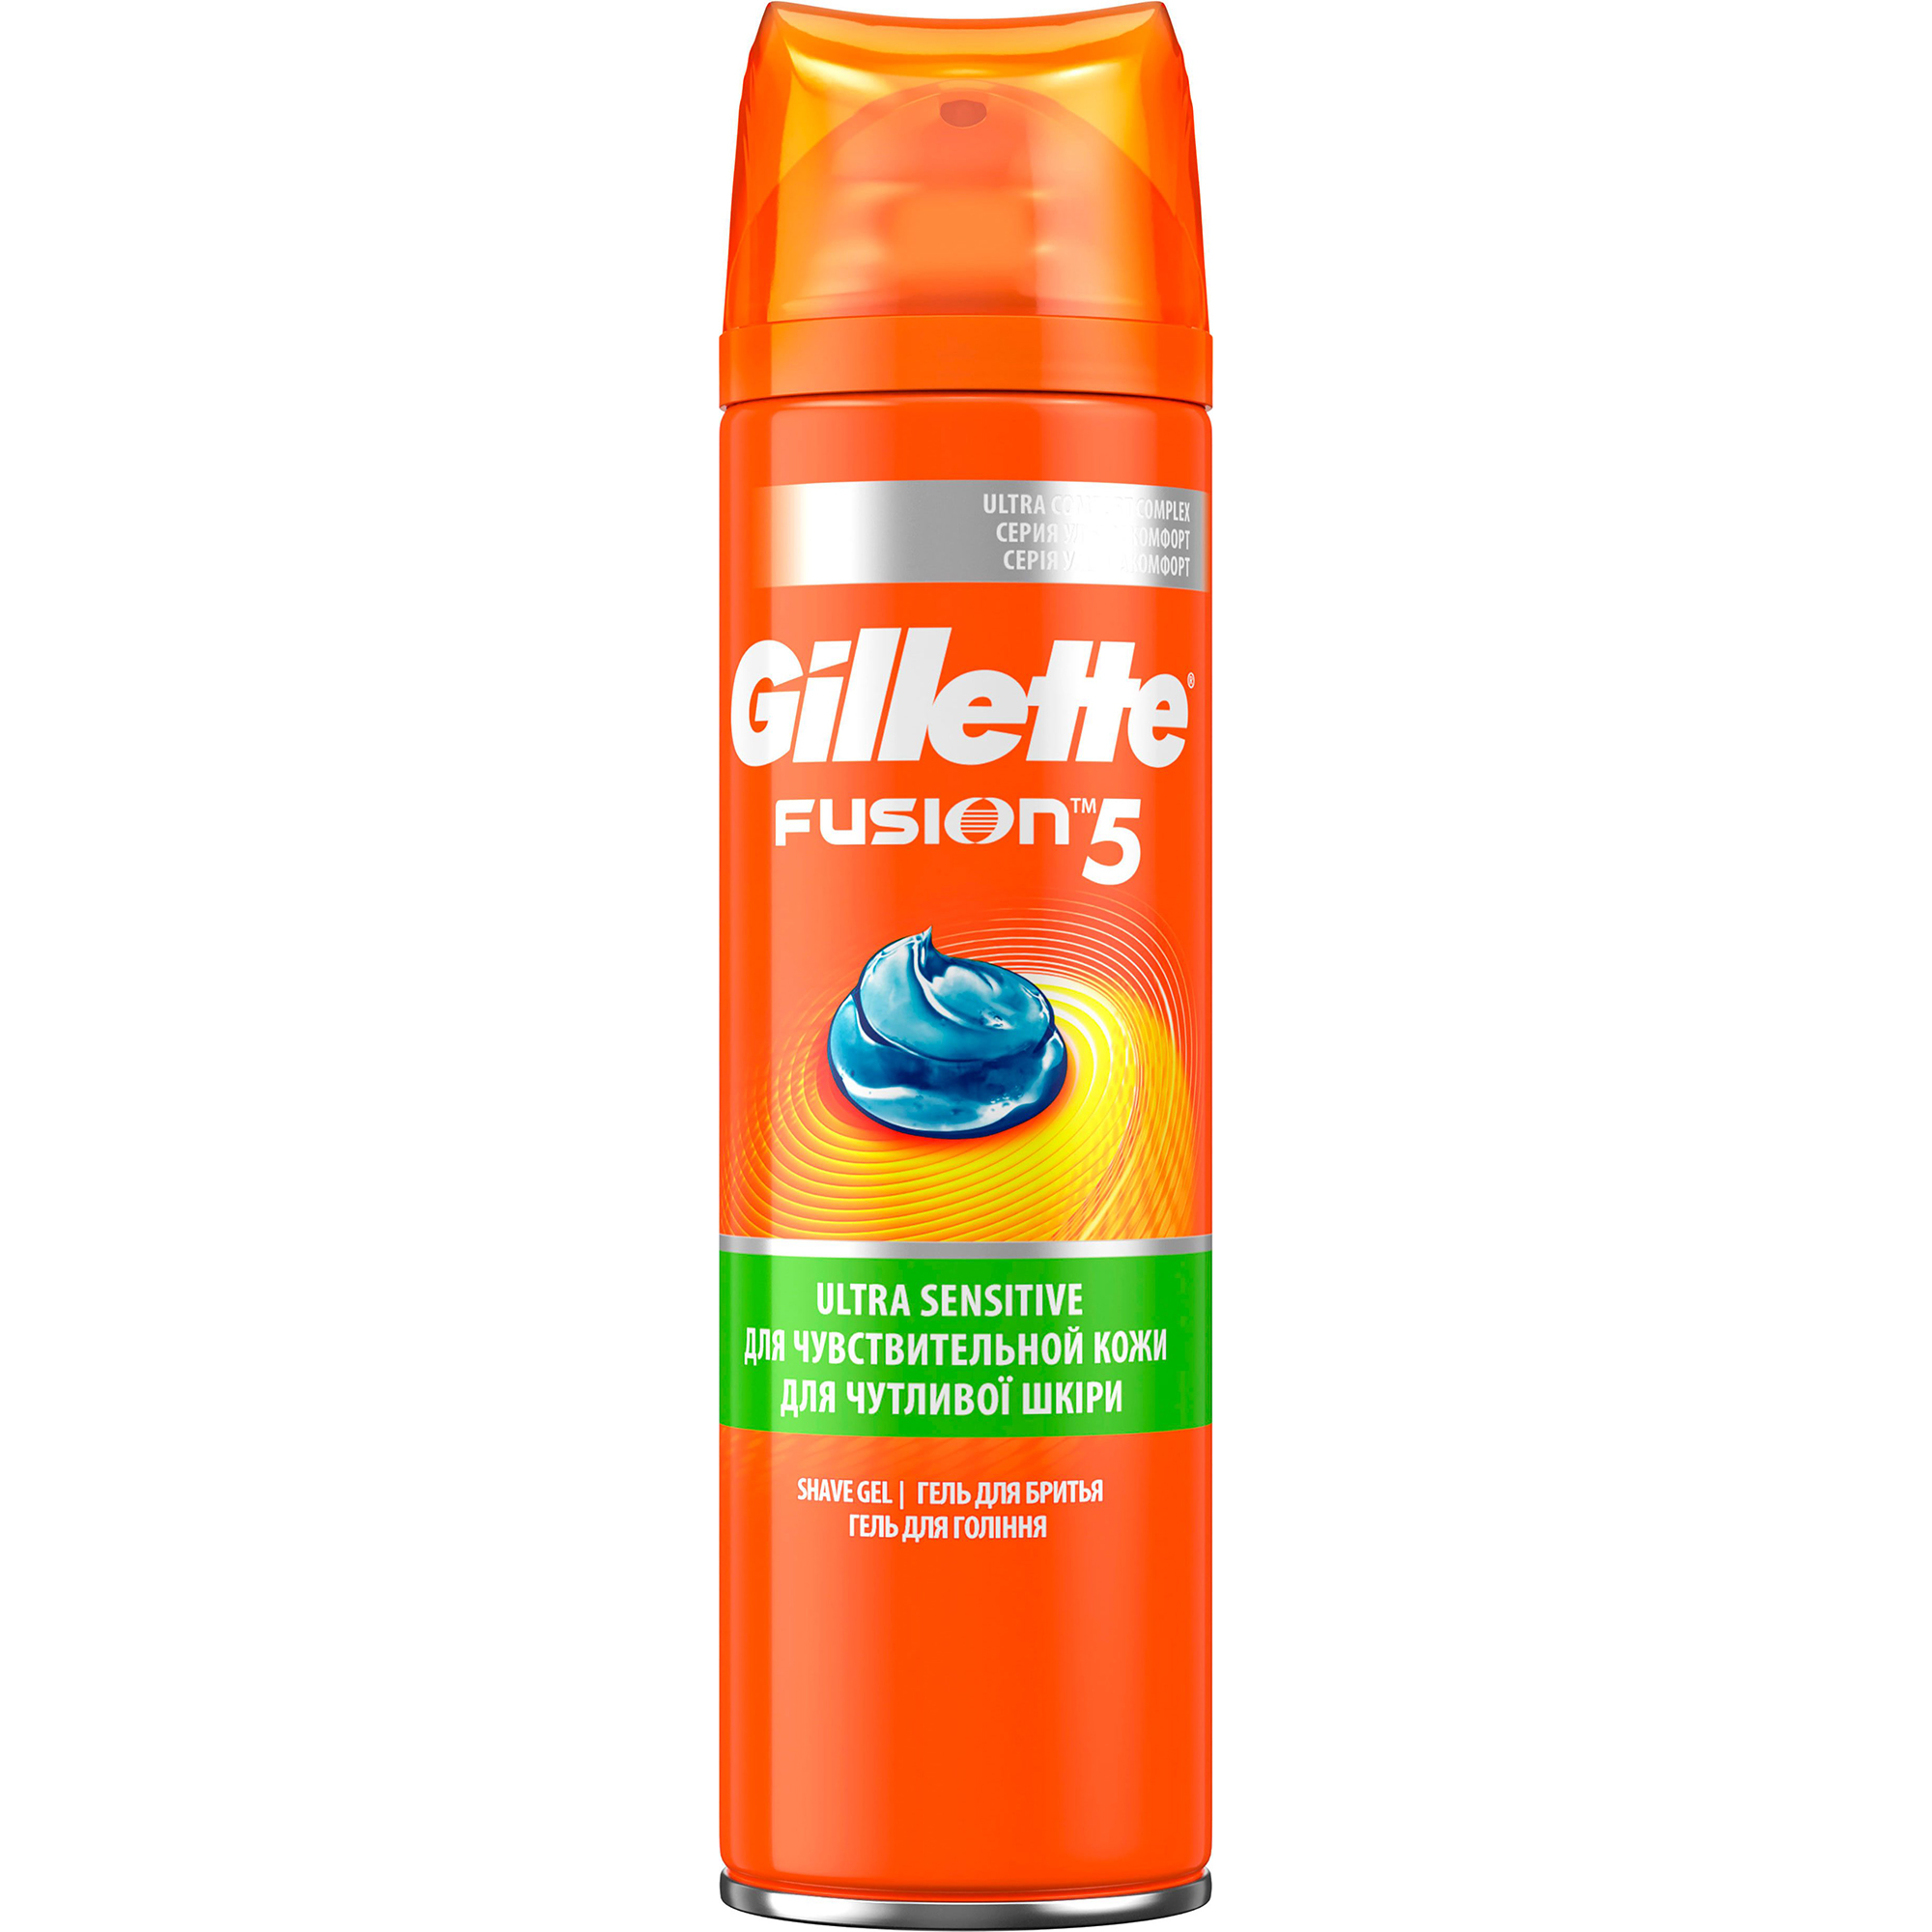 Gillette fusion 5 набор (гель для бритья 200мл + гель после бритья для чувствительной кожи)